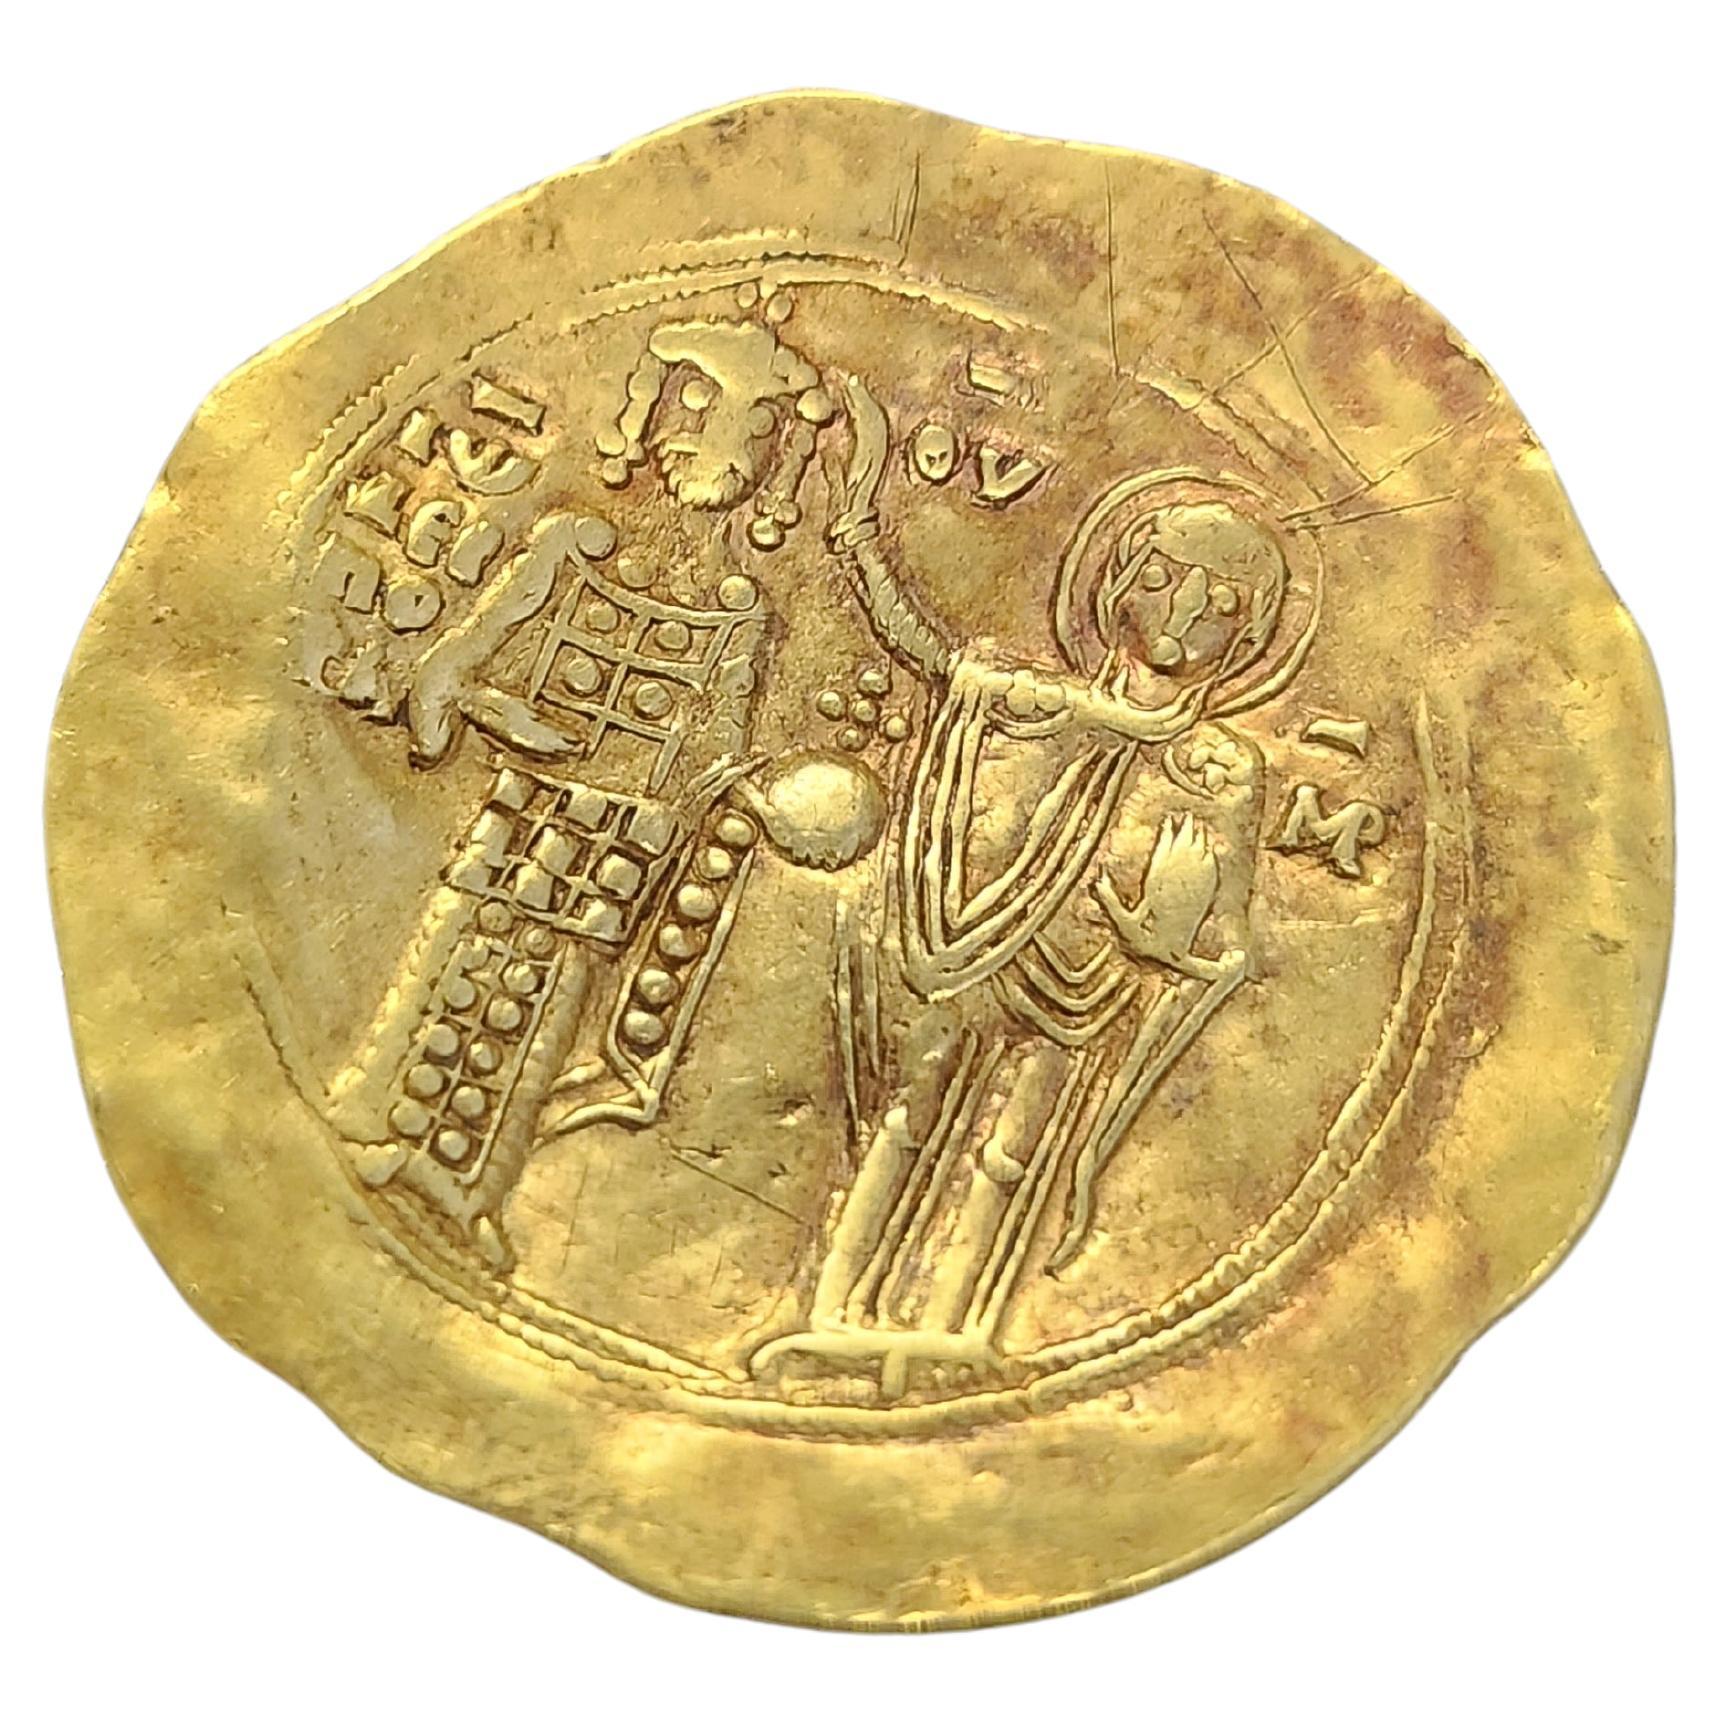 Pièce en or fin de l'époque byzantine pouvant être utilisée comme pendentif datant de 1221-1254 souverain john 111 doukas vatatzes et vierge nimbée empereur et autre pièce côté christ assis sur un trône sans dossier. 